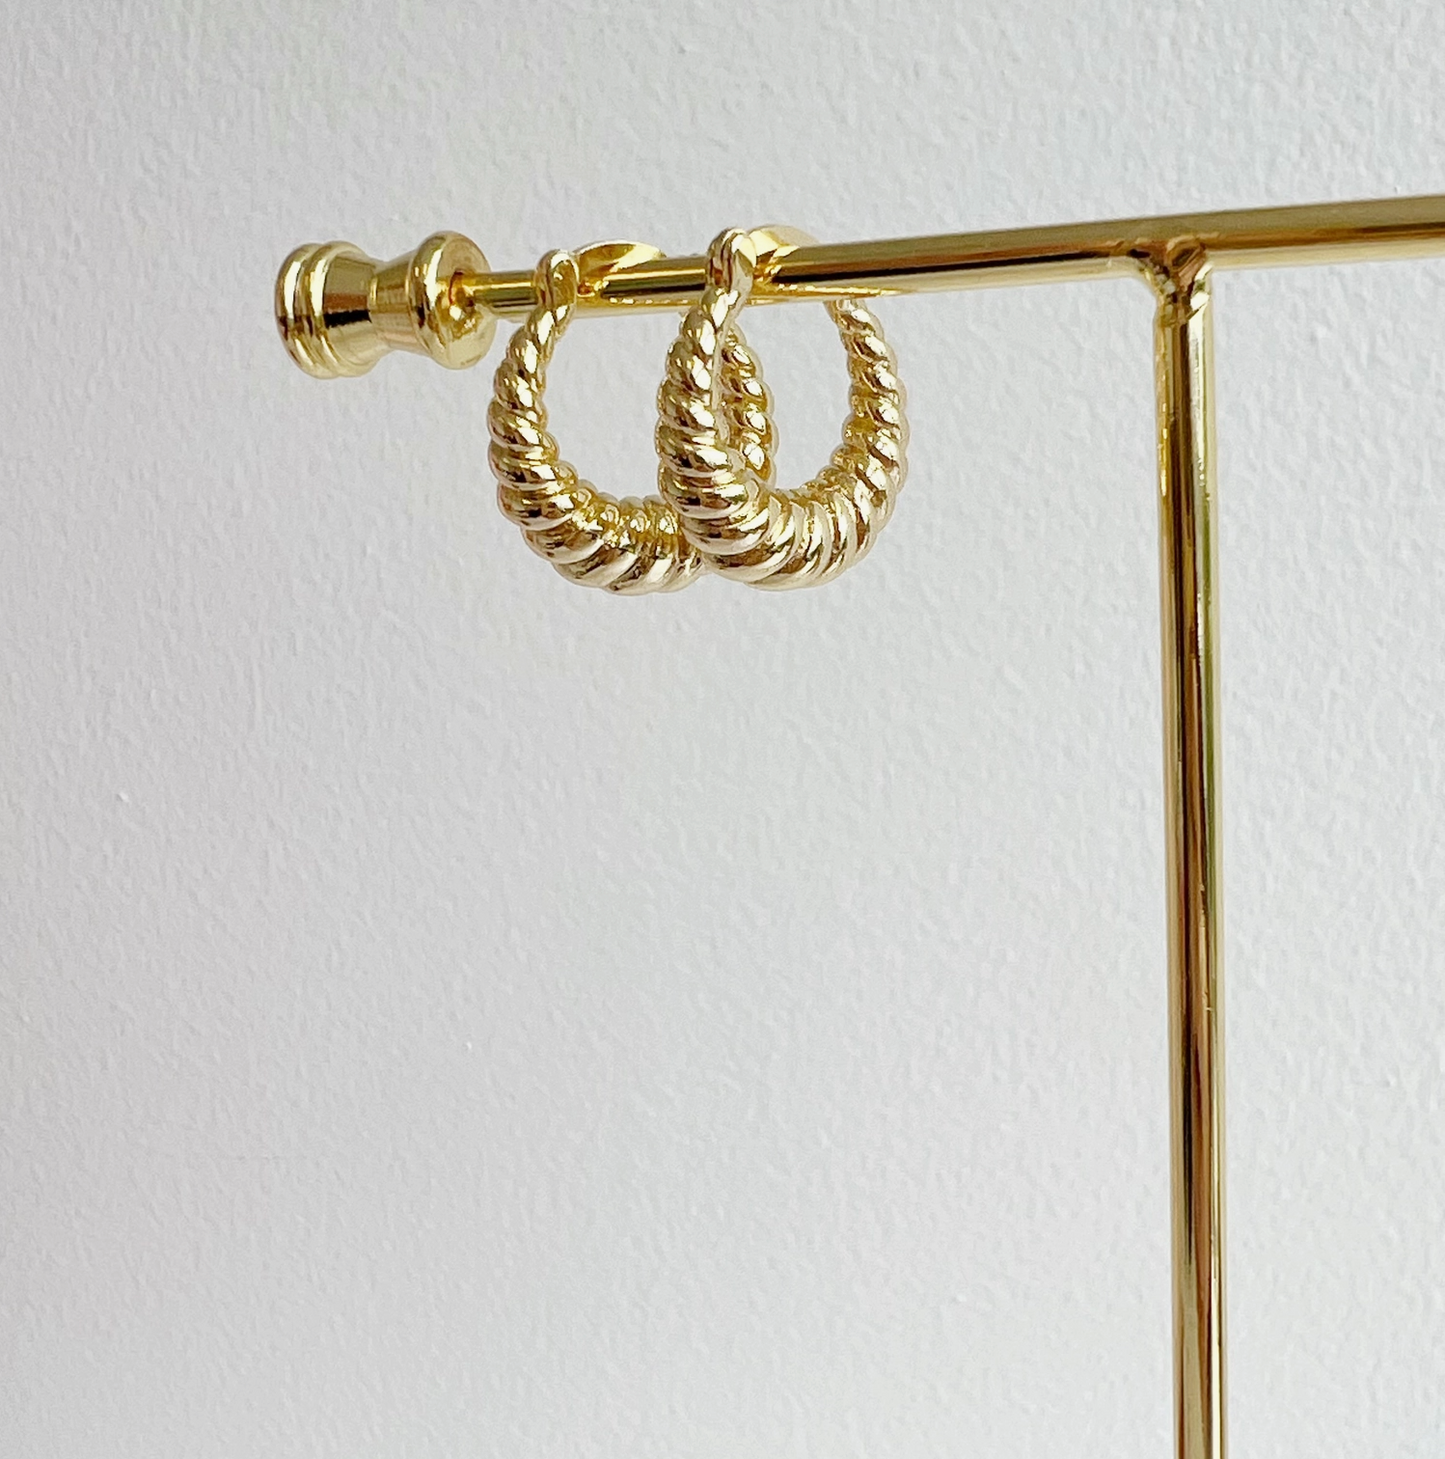 Croissant Twist Hoops Earrings Gold Filled - True By Kristy Jewelry